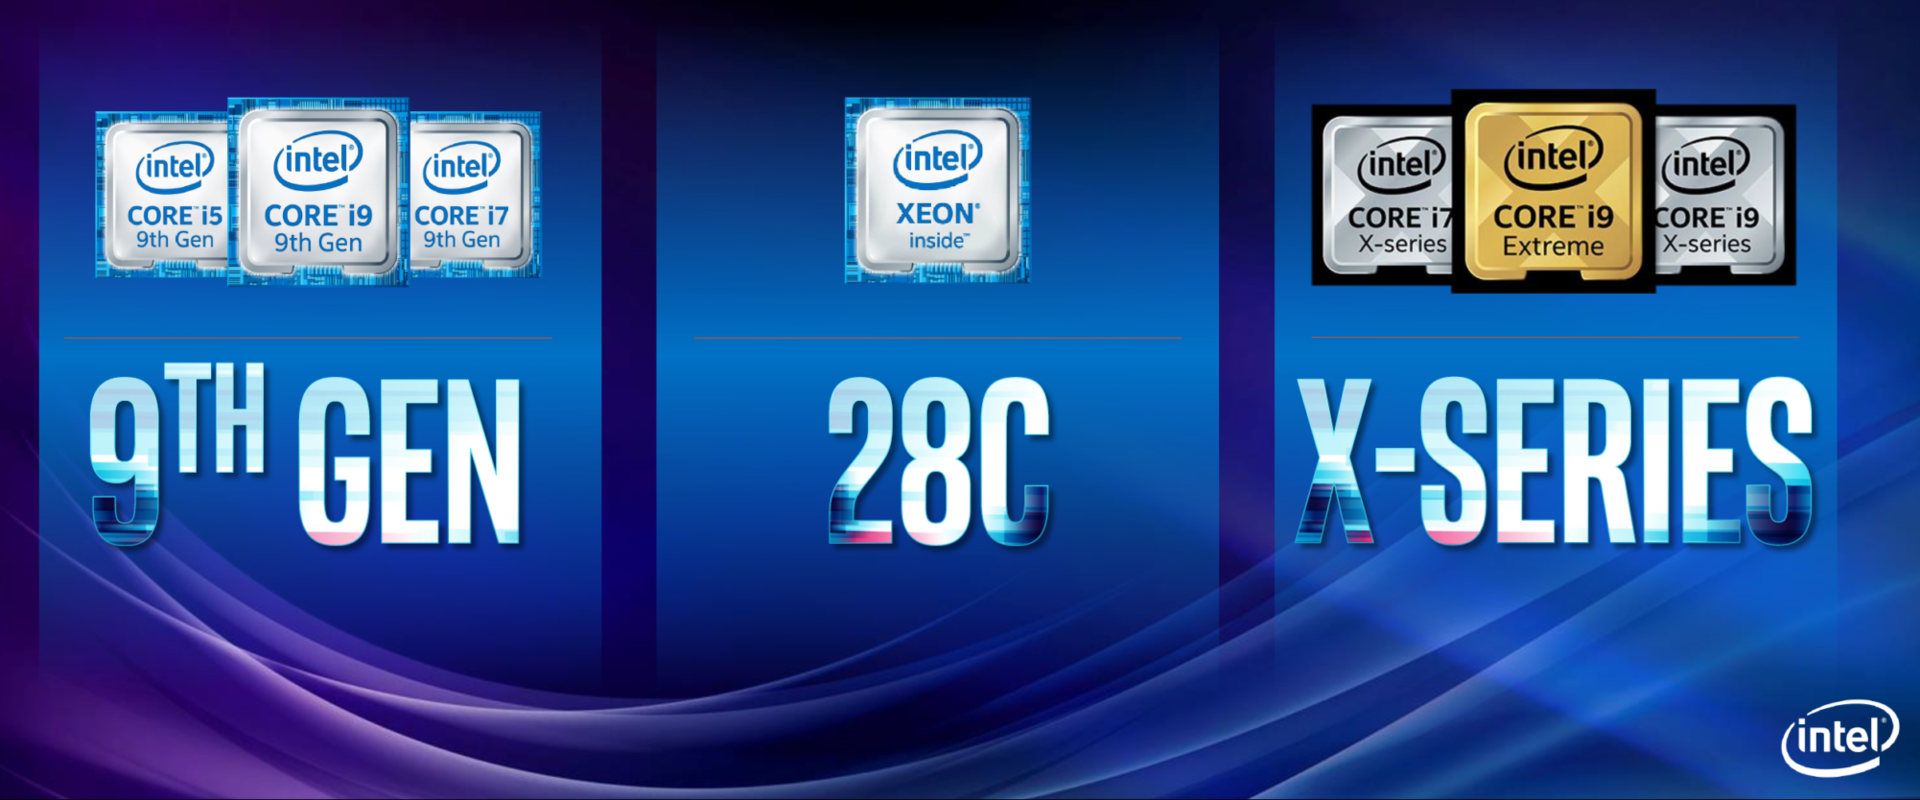 Új processzorokat jelentett be az Intel